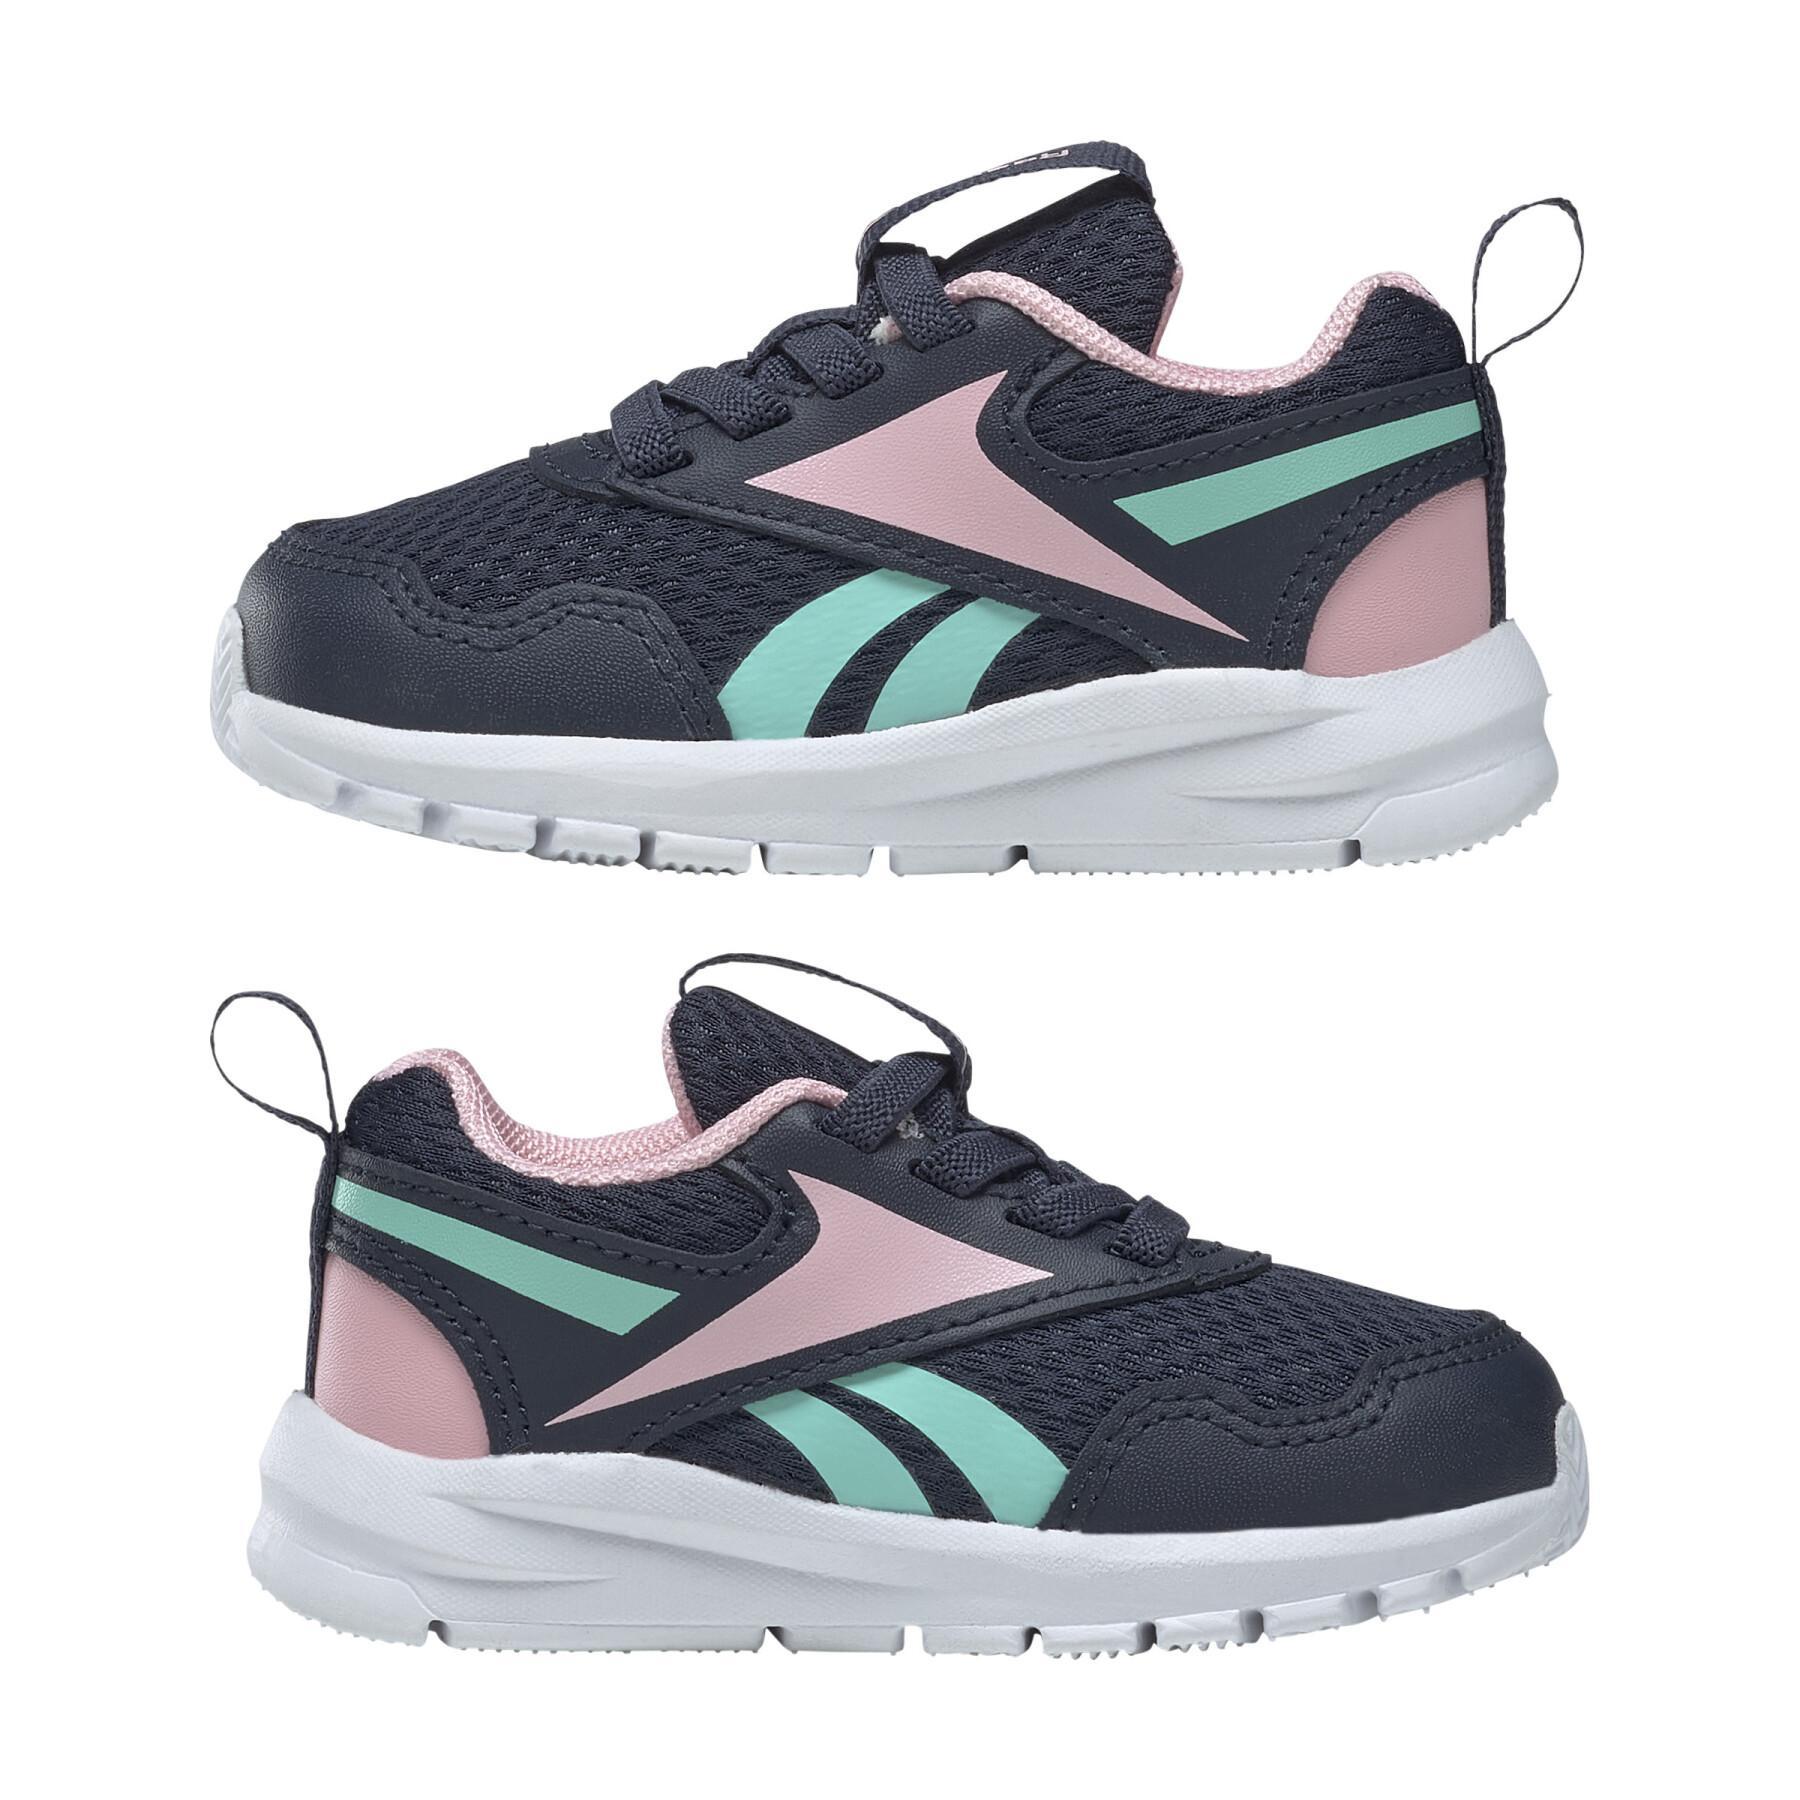 Girl's running shoes Reebok XT Sprinter 2 Alt